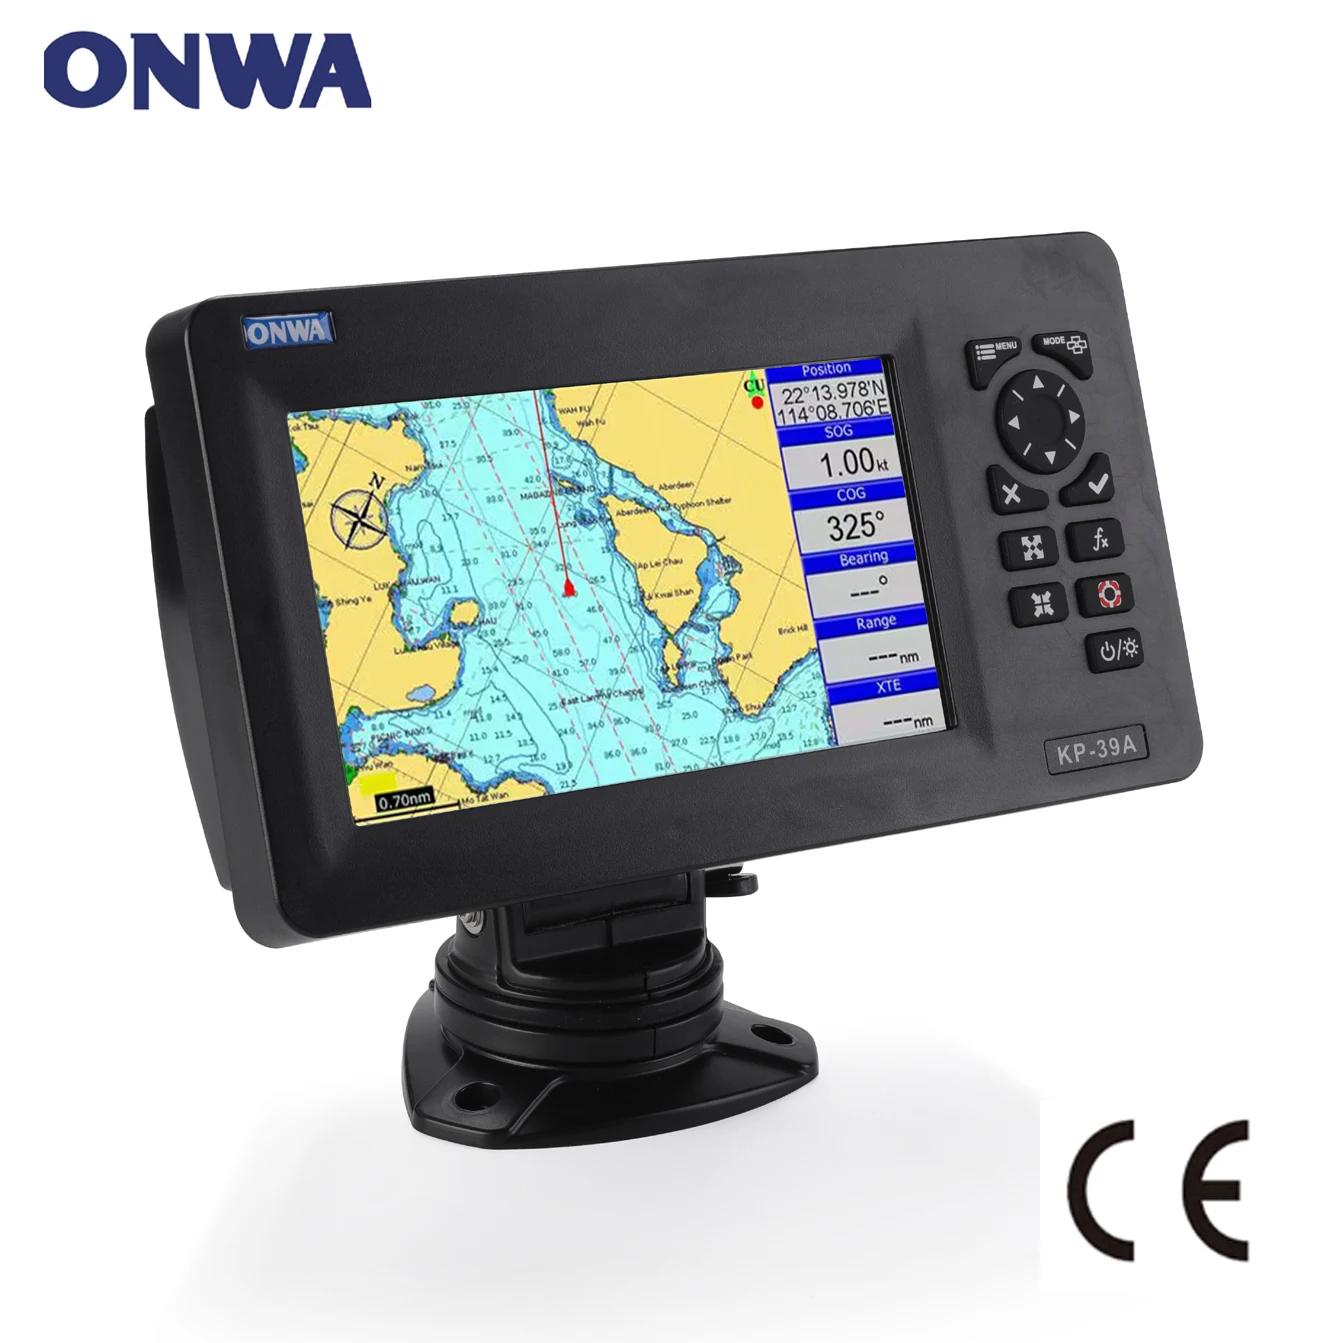 ONWA KP-39A 7 ġ ÷ LCD GPS Ʈ ÷ GPS ׳   Ŭ B AIS Ʈ  ޺ ؾ GPS ׺